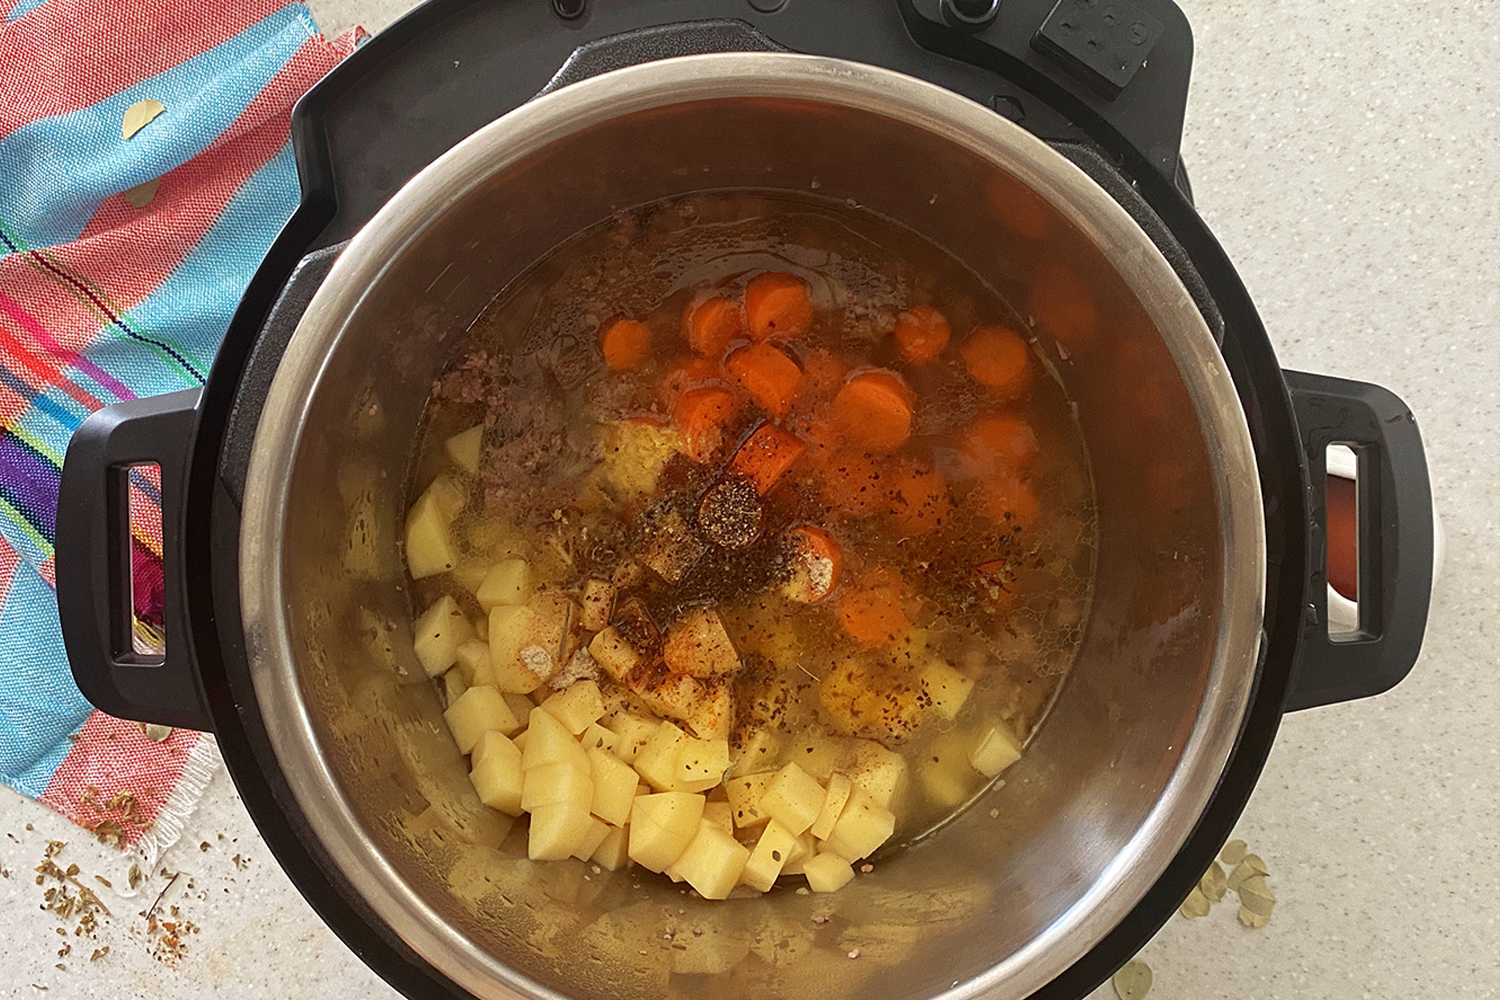 Instant Pot Hamburger Soup